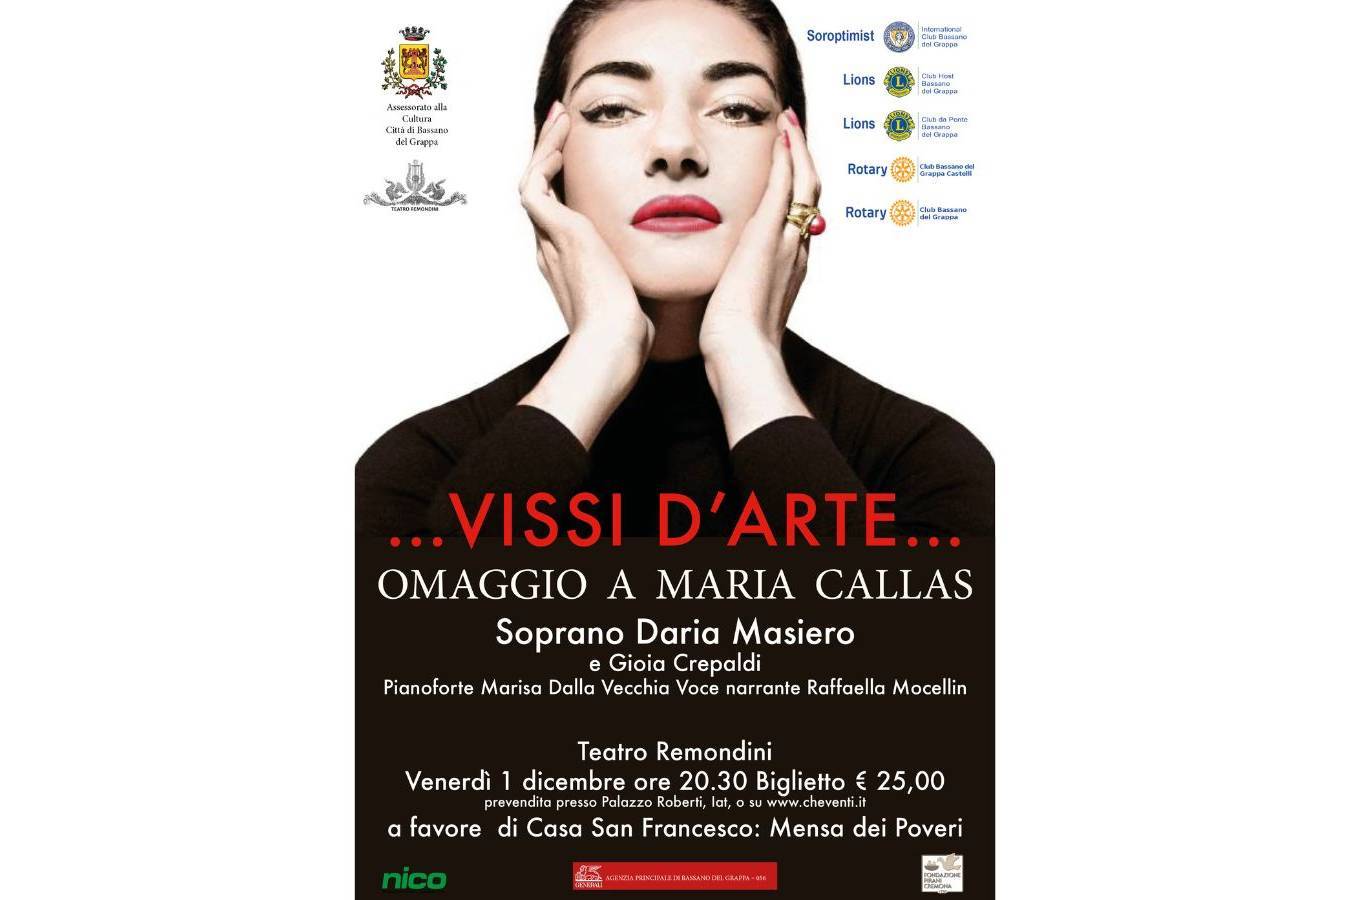 ... VISSI D'ARTE ... Omaggio a Maria Callas